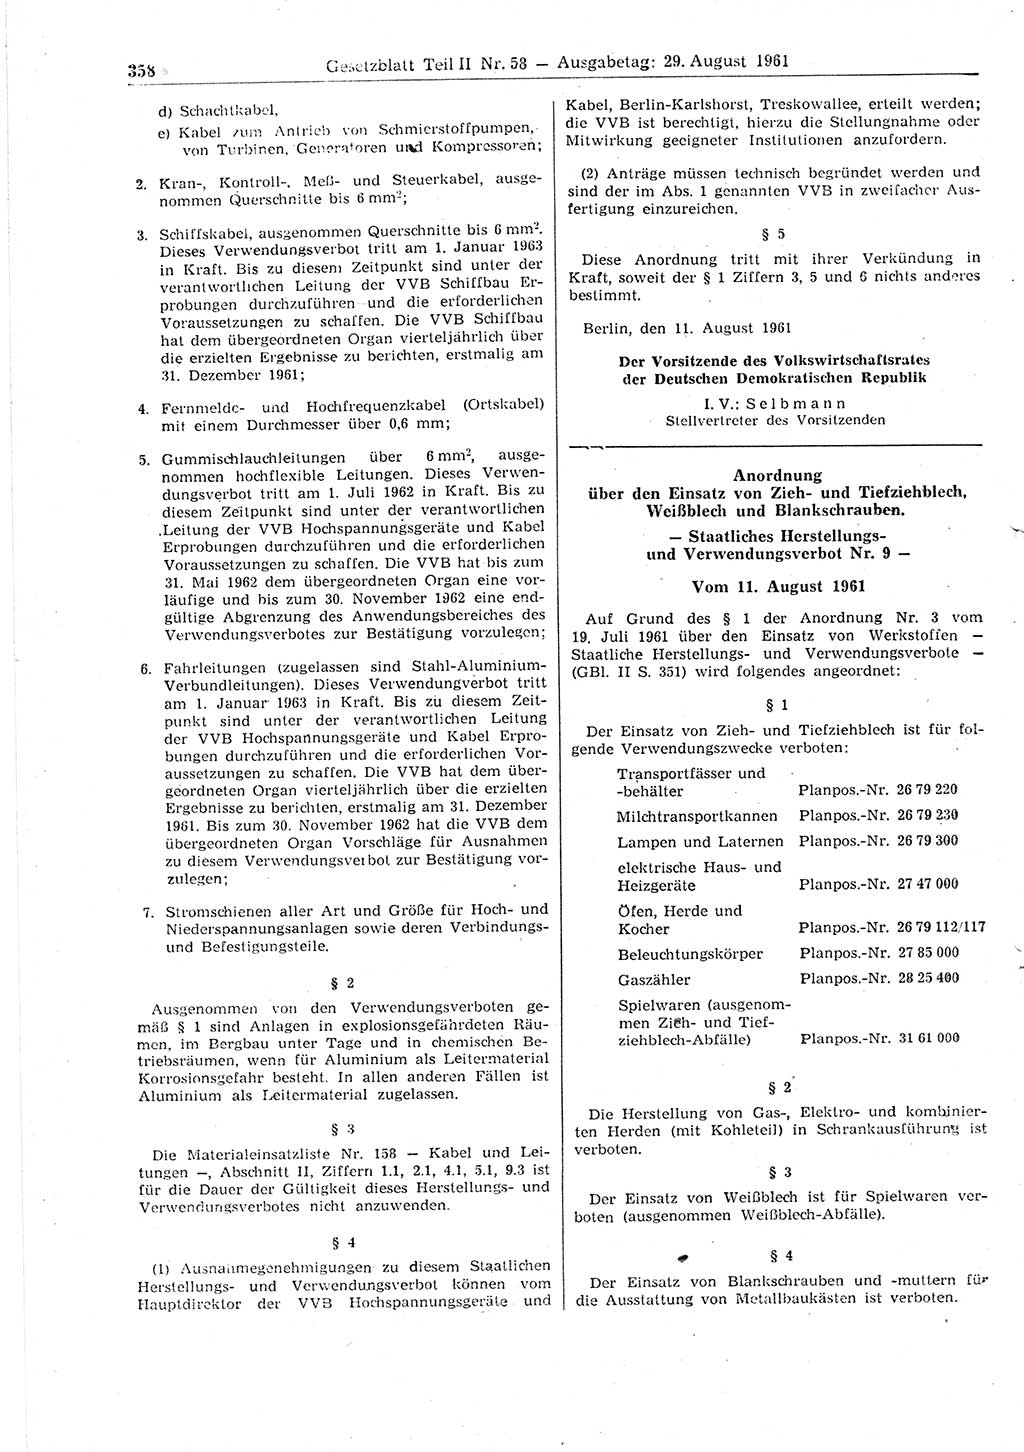 Gesetzblatt (GBl.) der Deutschen Demokratischen Republik (DDR) Teil ⅠⅠ 1961, Seite 358 (GBl. DDR ⅠⅠ 1961, S. 358)